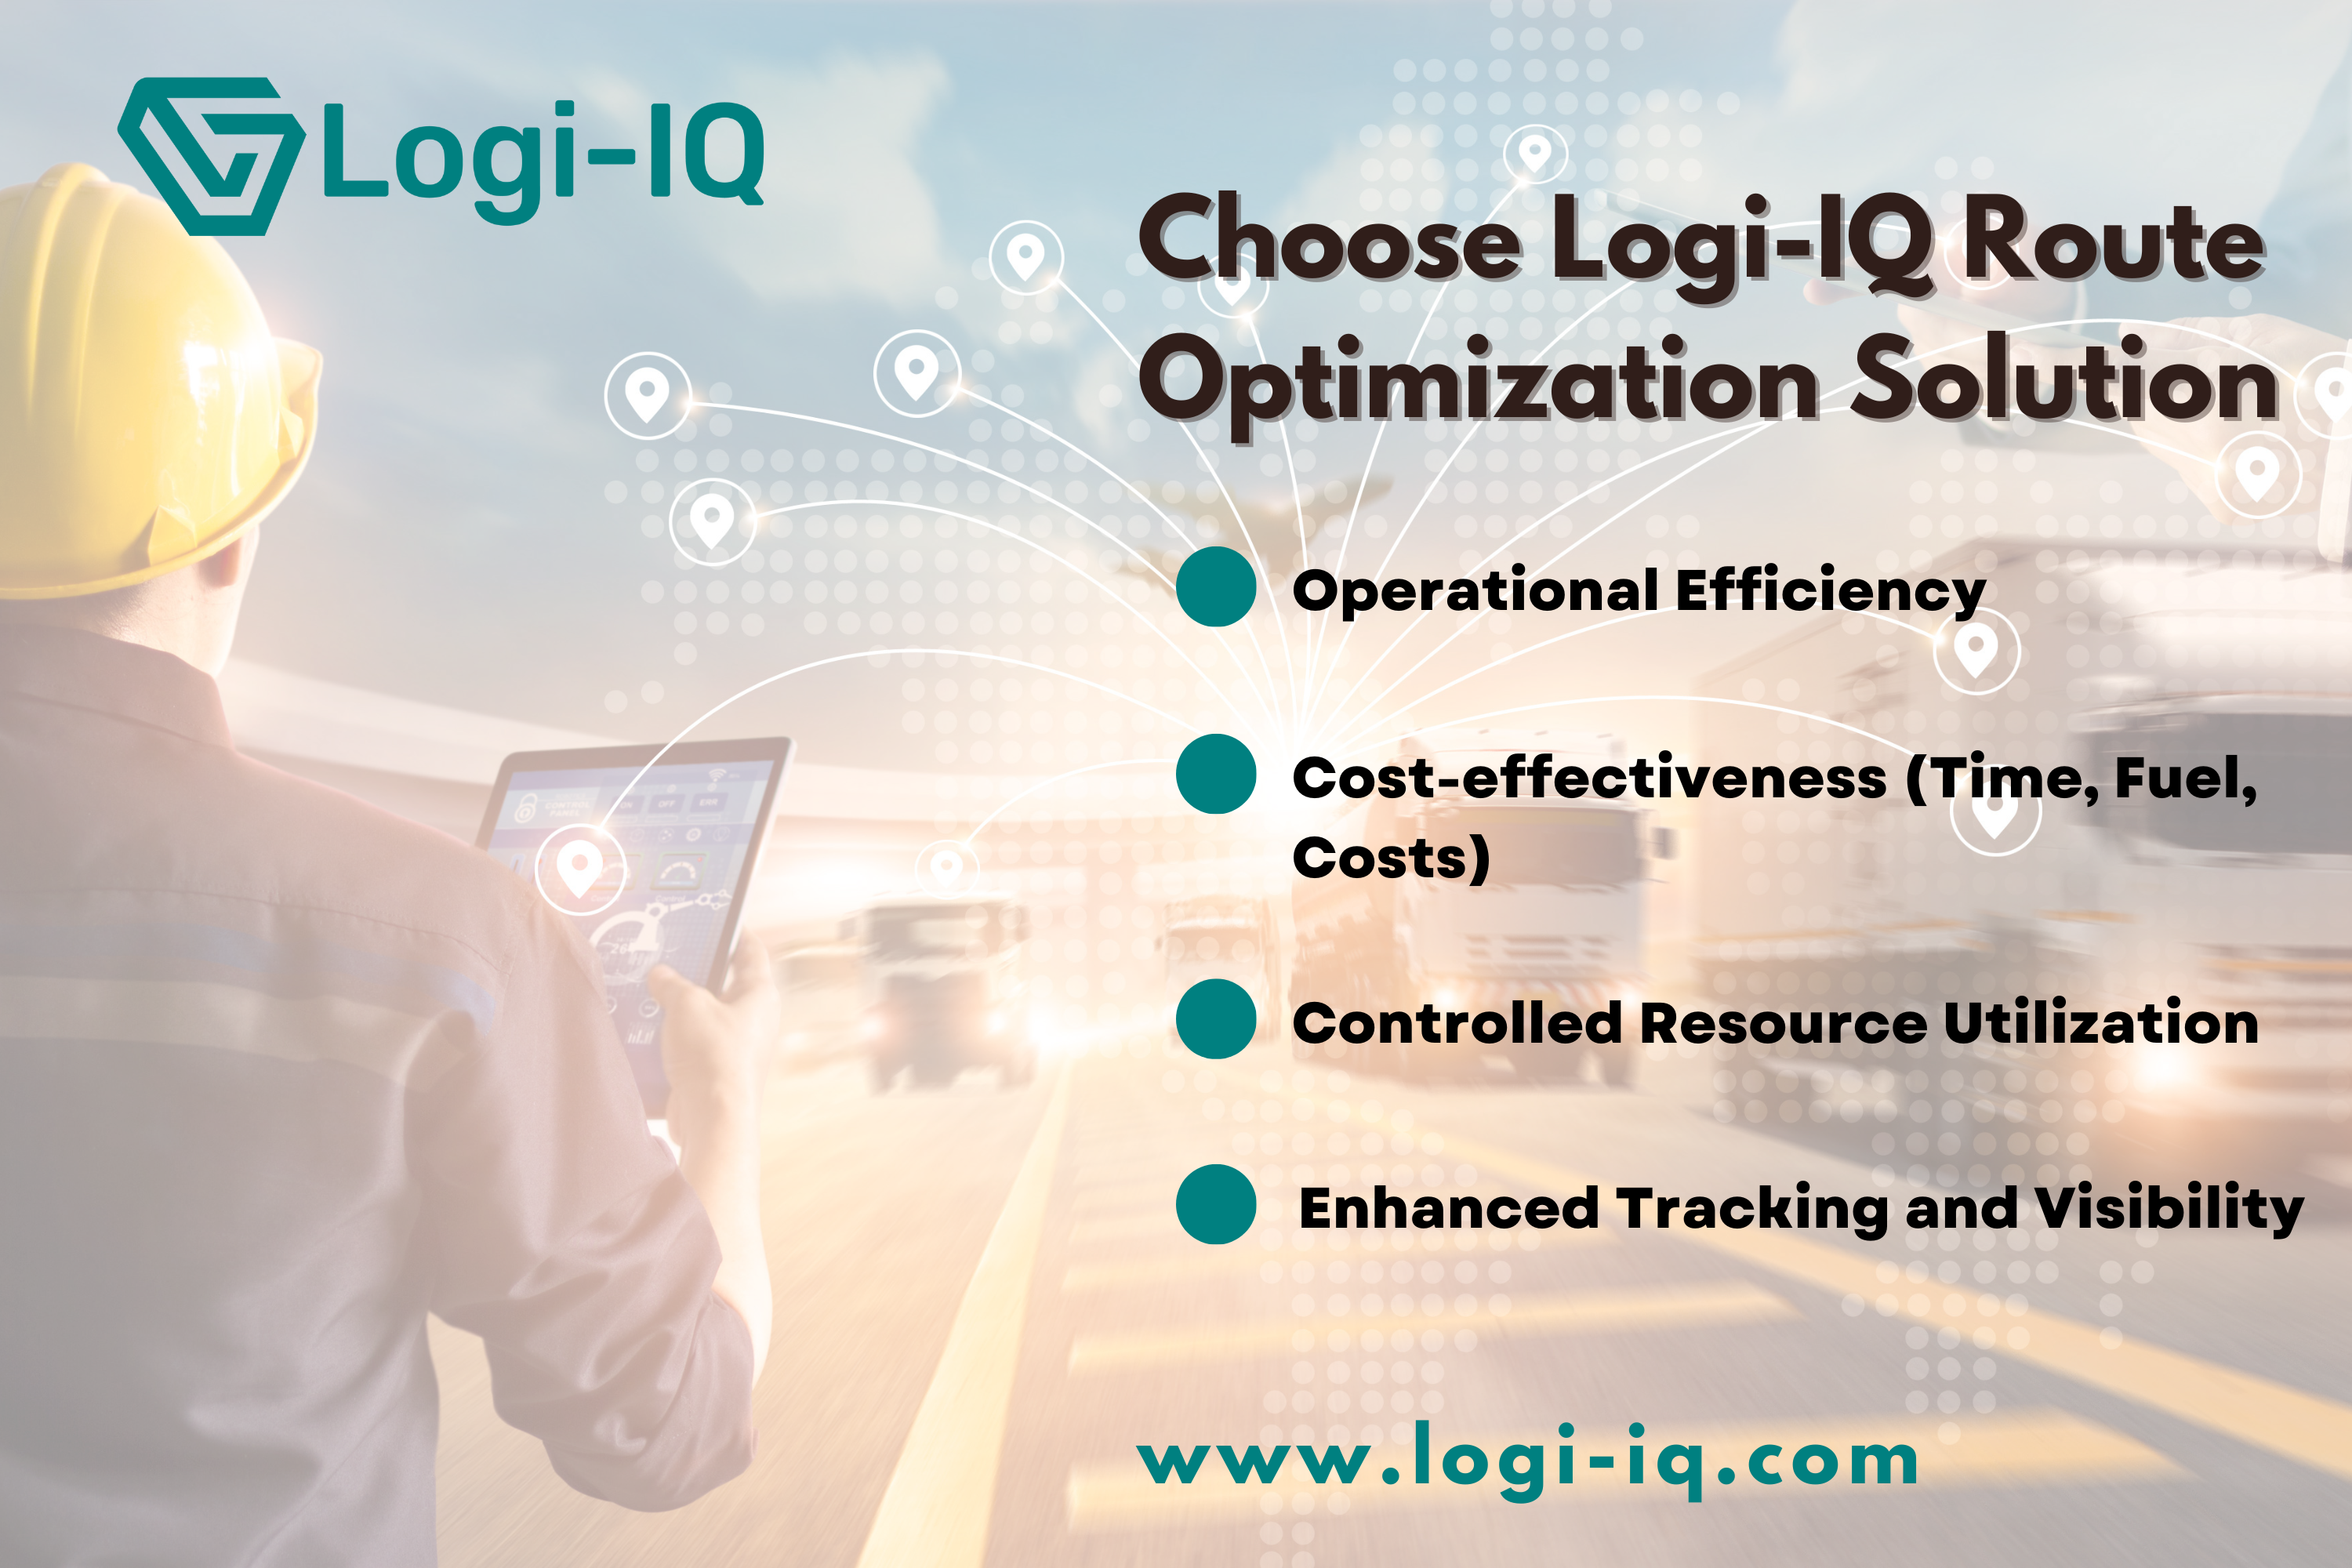 List of Logi-IQ benefits